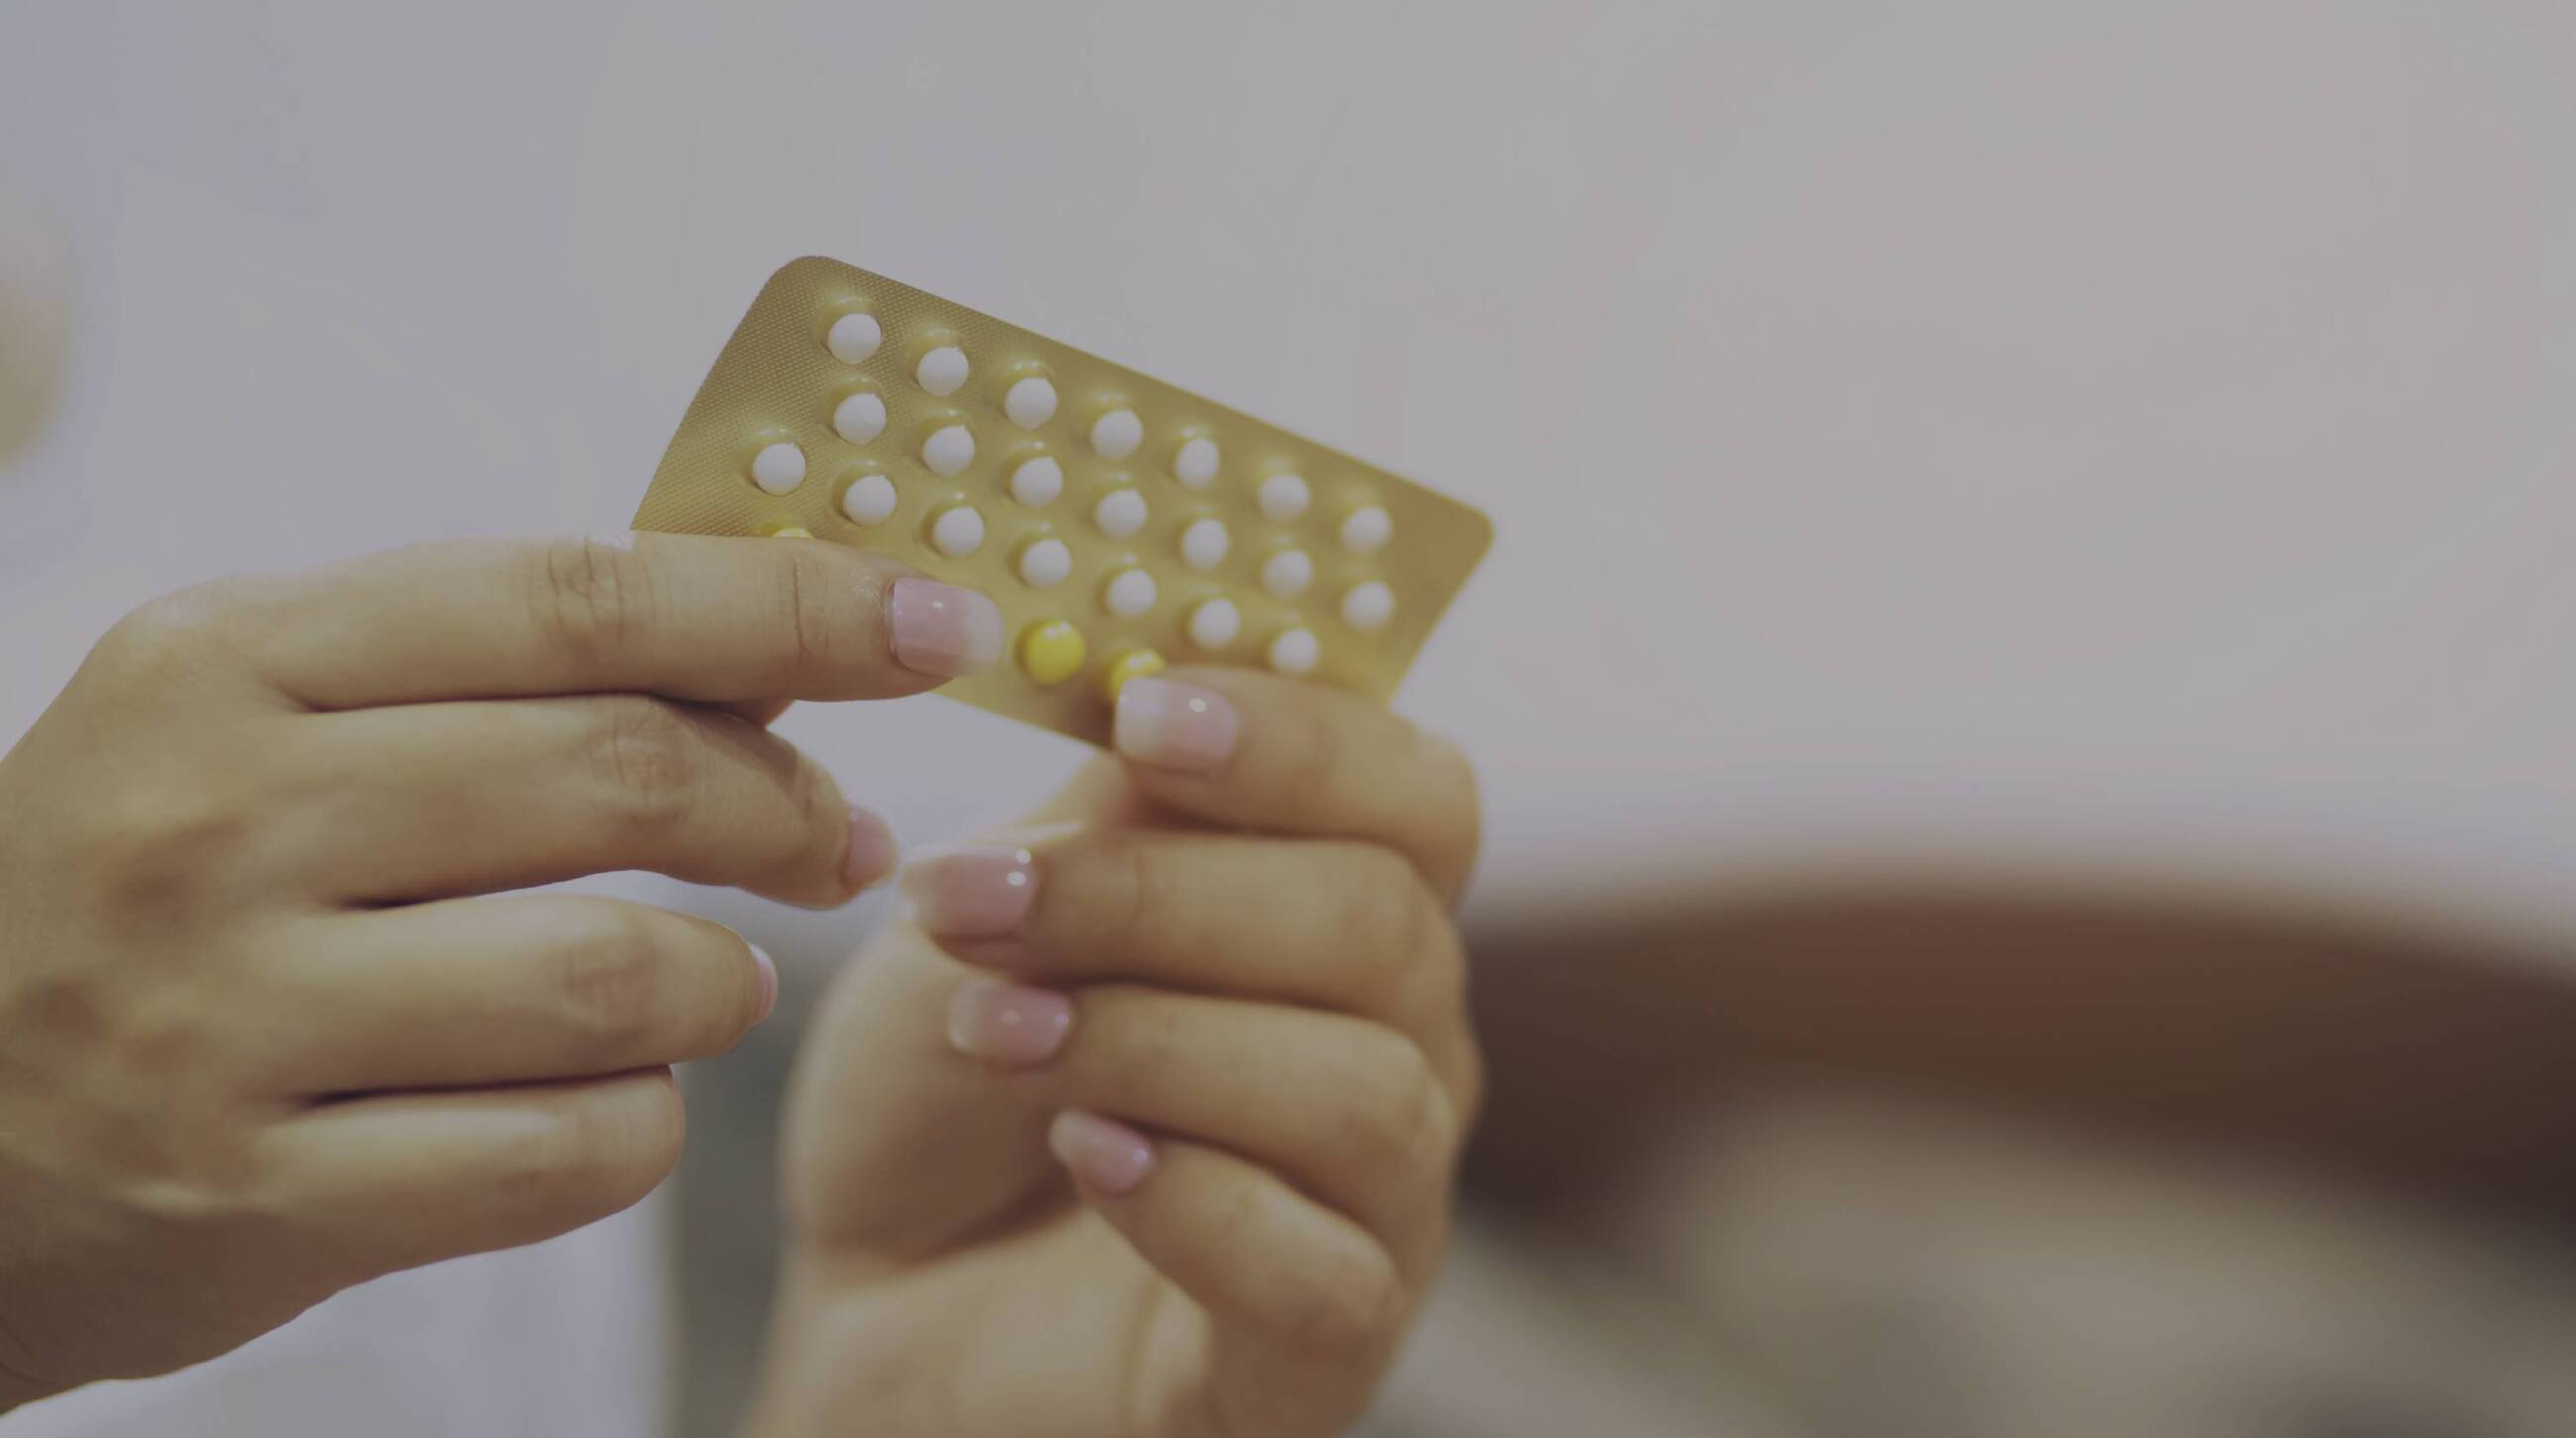 Encadenar Moral dieta Cómo funcionan las pastillas anticonceptivas? - ecoceutics